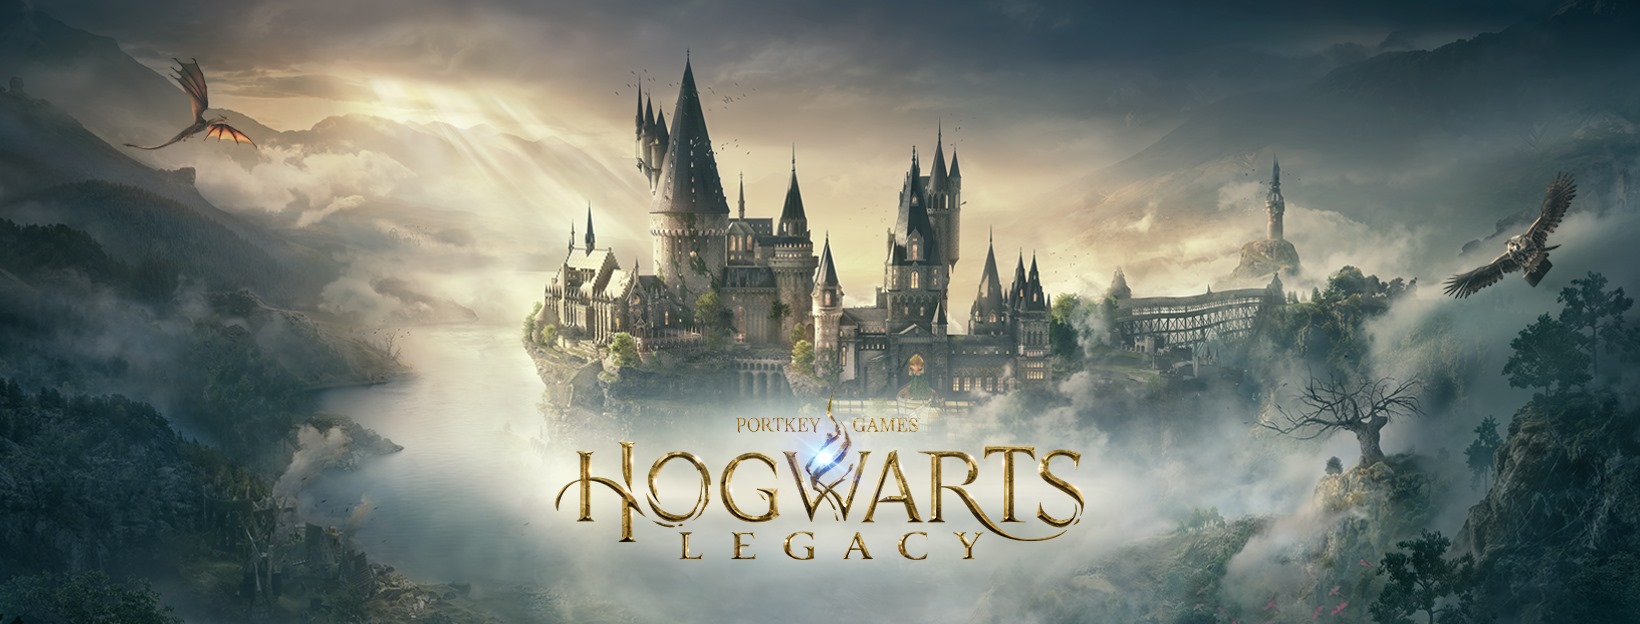 Hogwarts Legacy logo photo